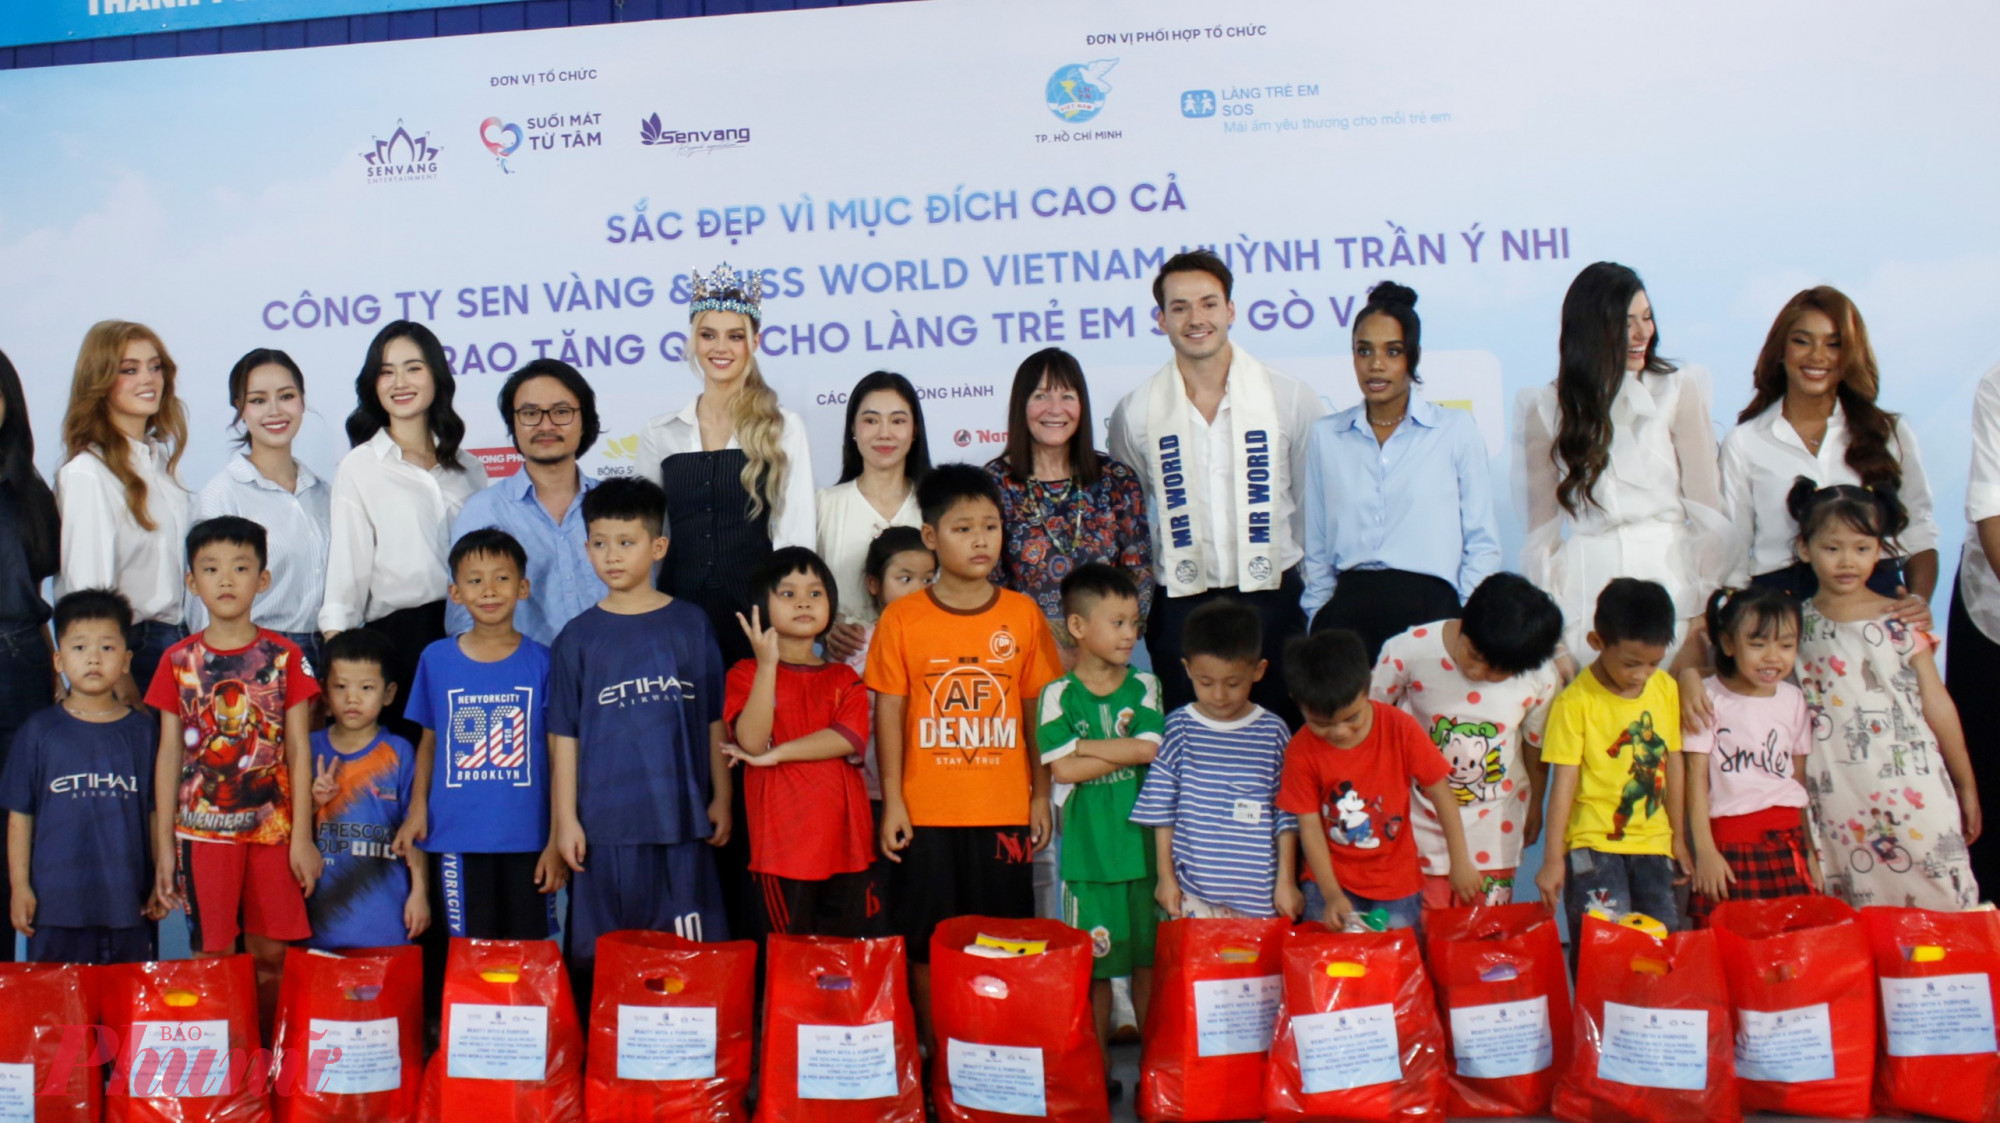 Đại diện Công ty Sen Vàng và các hoa hậu, á hậu trao quà cho các em tại Làng trẻ SOS Gò Vấp.